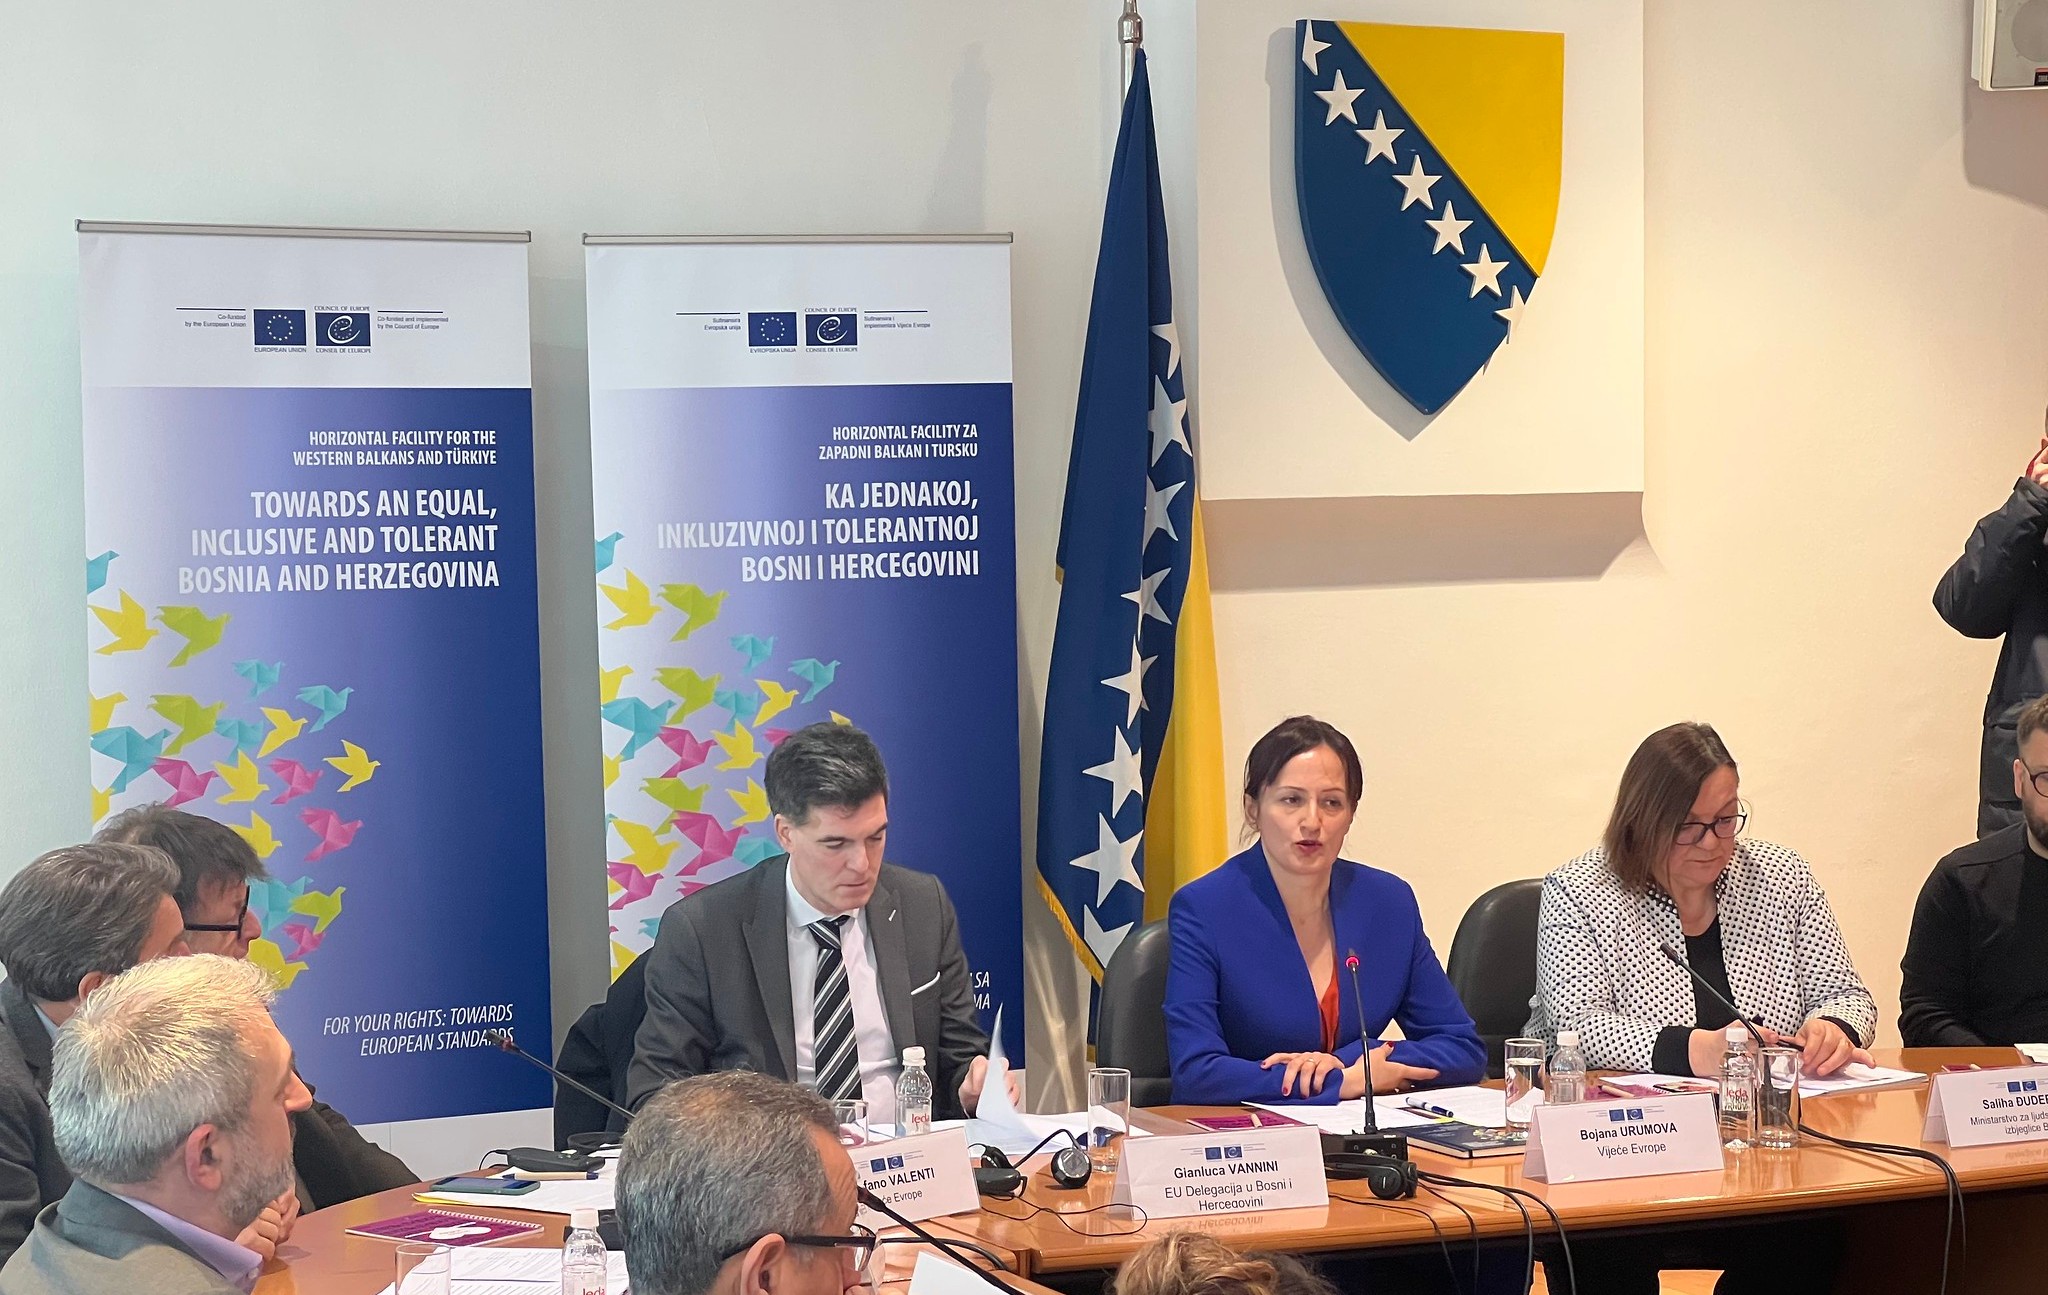 Evropska unija i Vijeće Evrope nastavljaju promovisati inkluziju i ravnopravnost u Bosni i Hercegovini